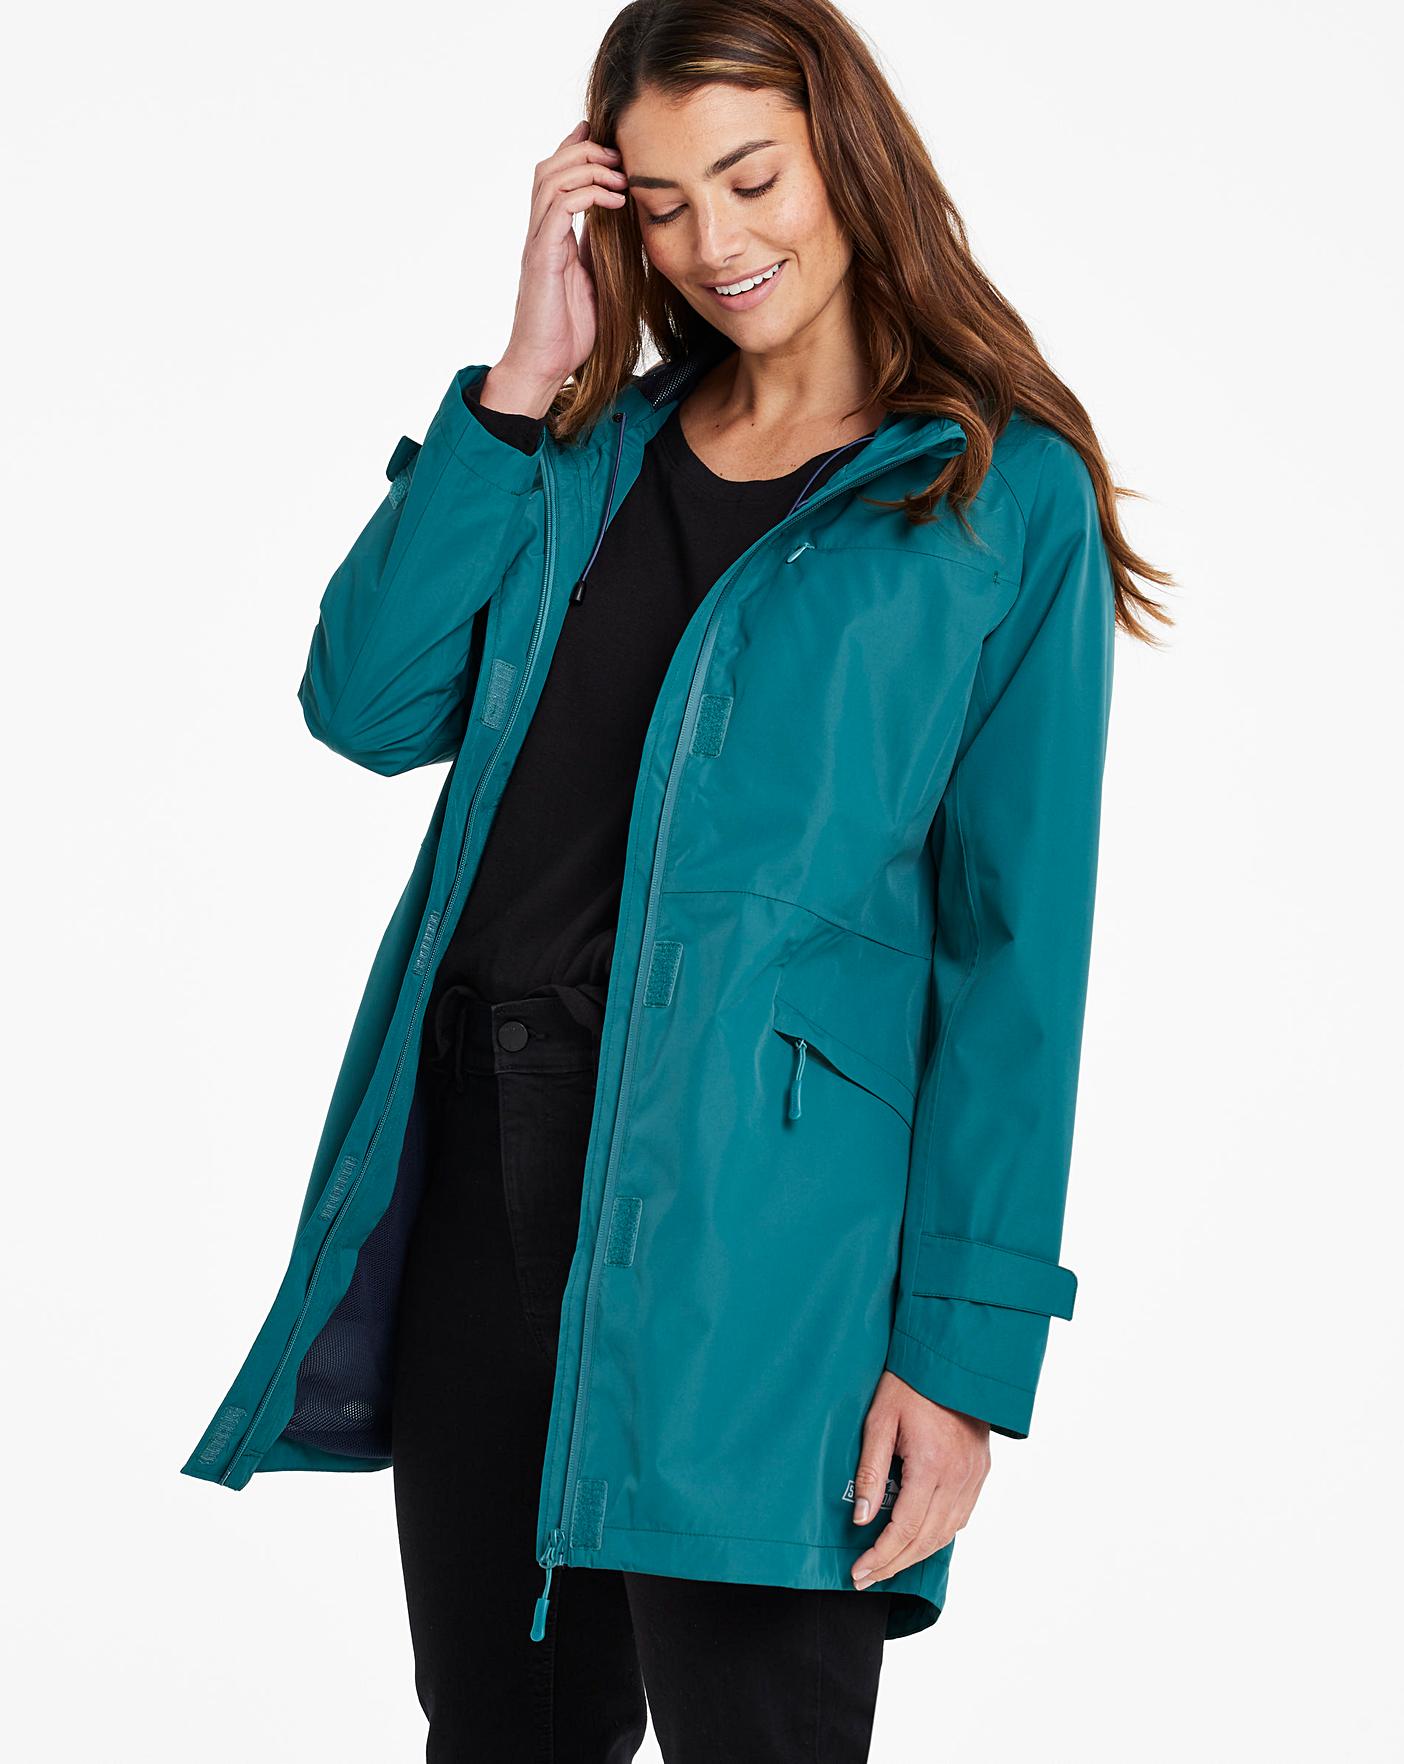 Snowdonia Mesh Lined Waterproof Jacket | Oxendales